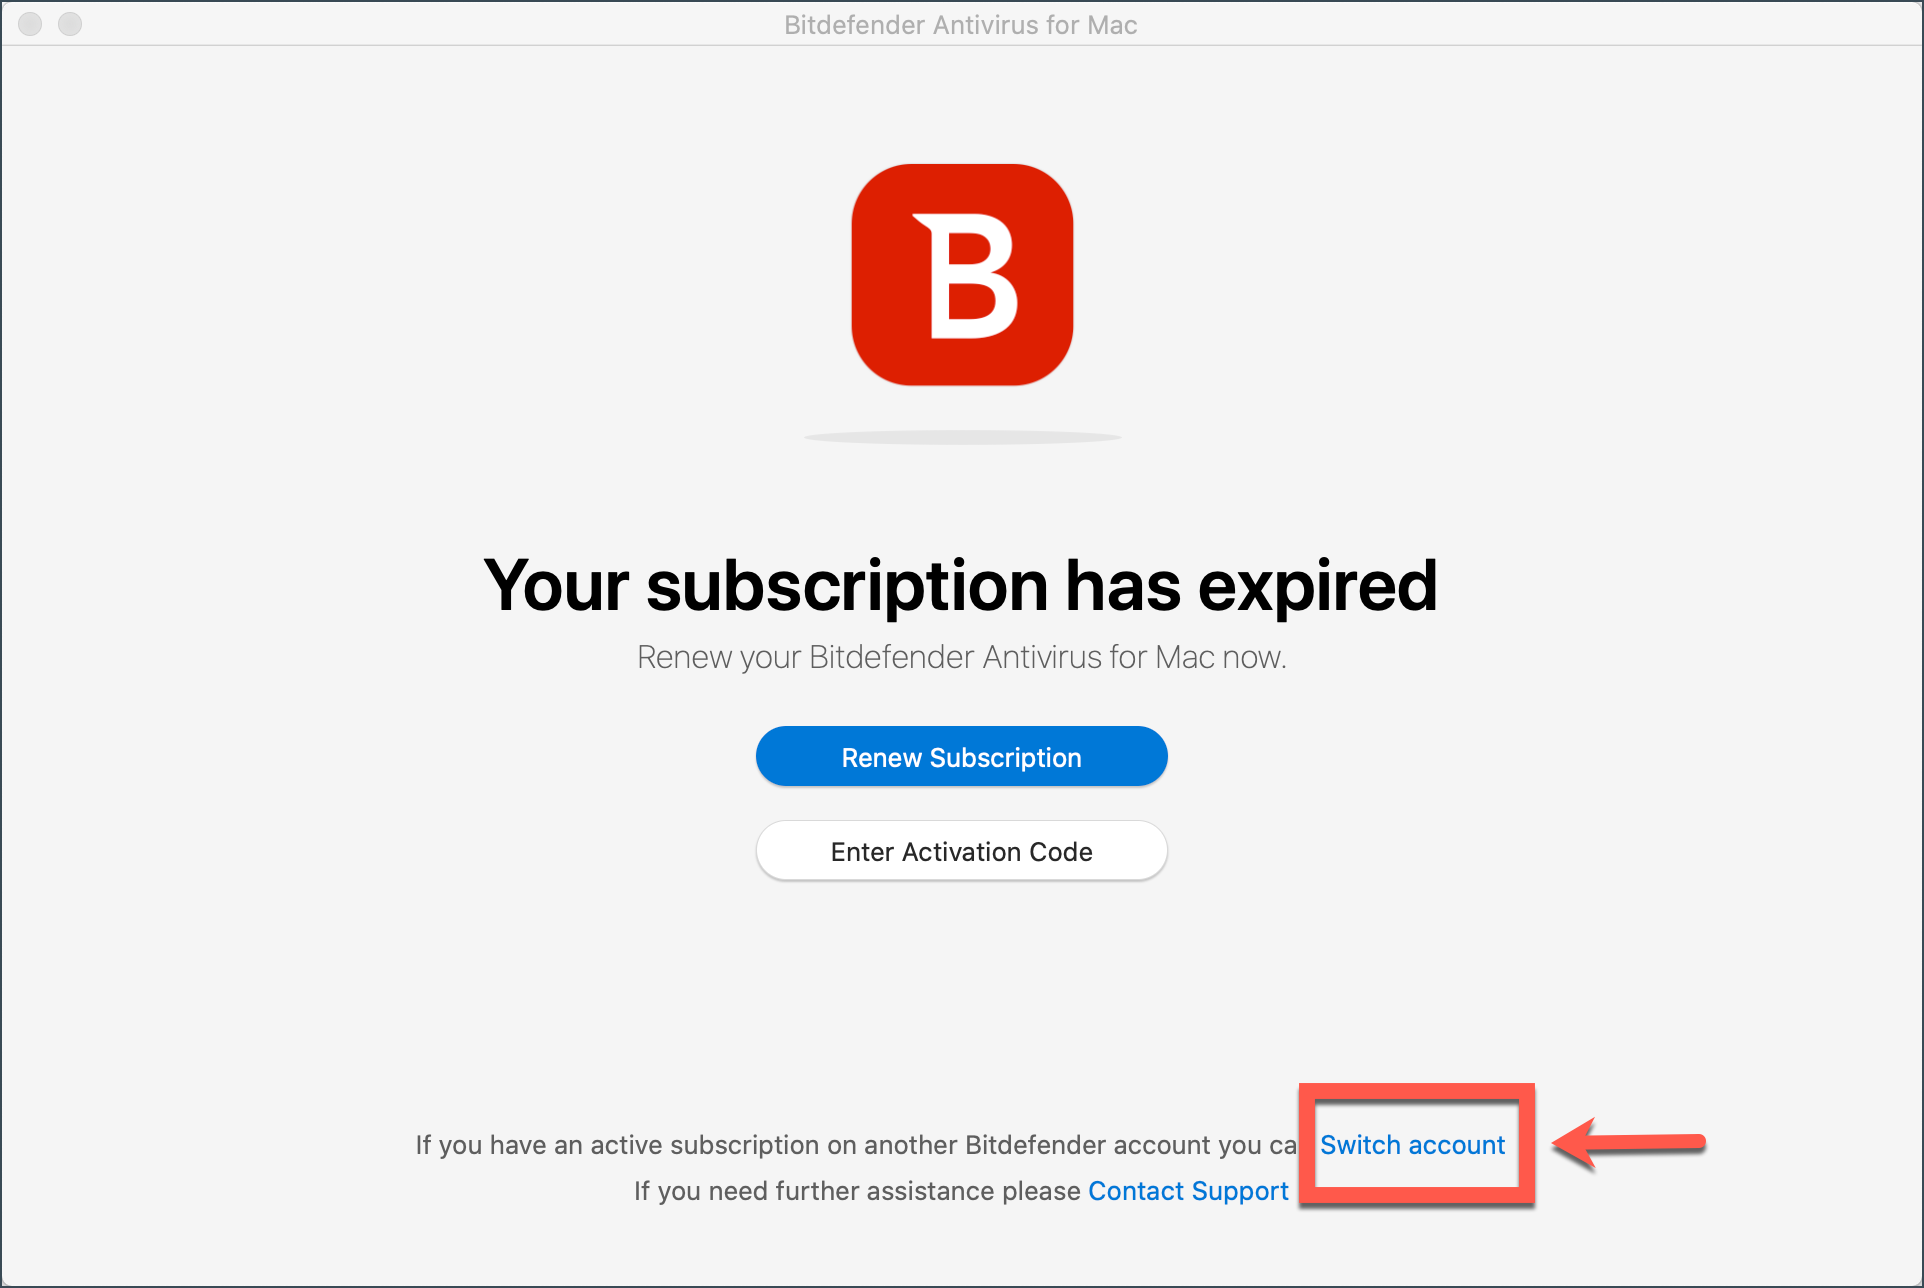 Cambie de cuenta para actualizar su suscripción a Bitdefender